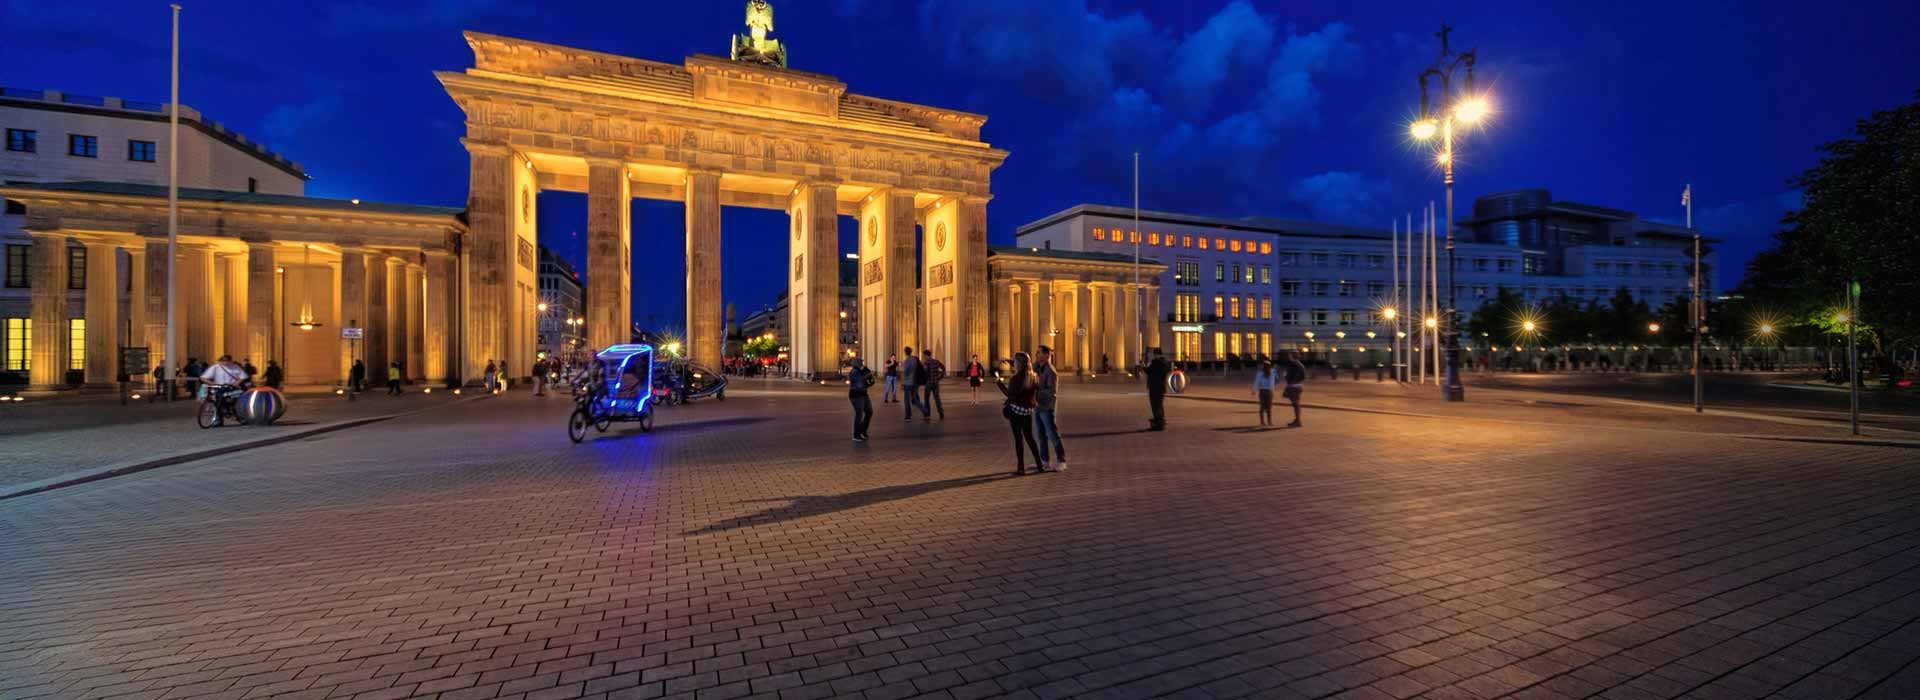 Germania: per l'economia tedesca il 2019 è stato un anno da dimenticare, e il 2020 non porterà grande sollievo 